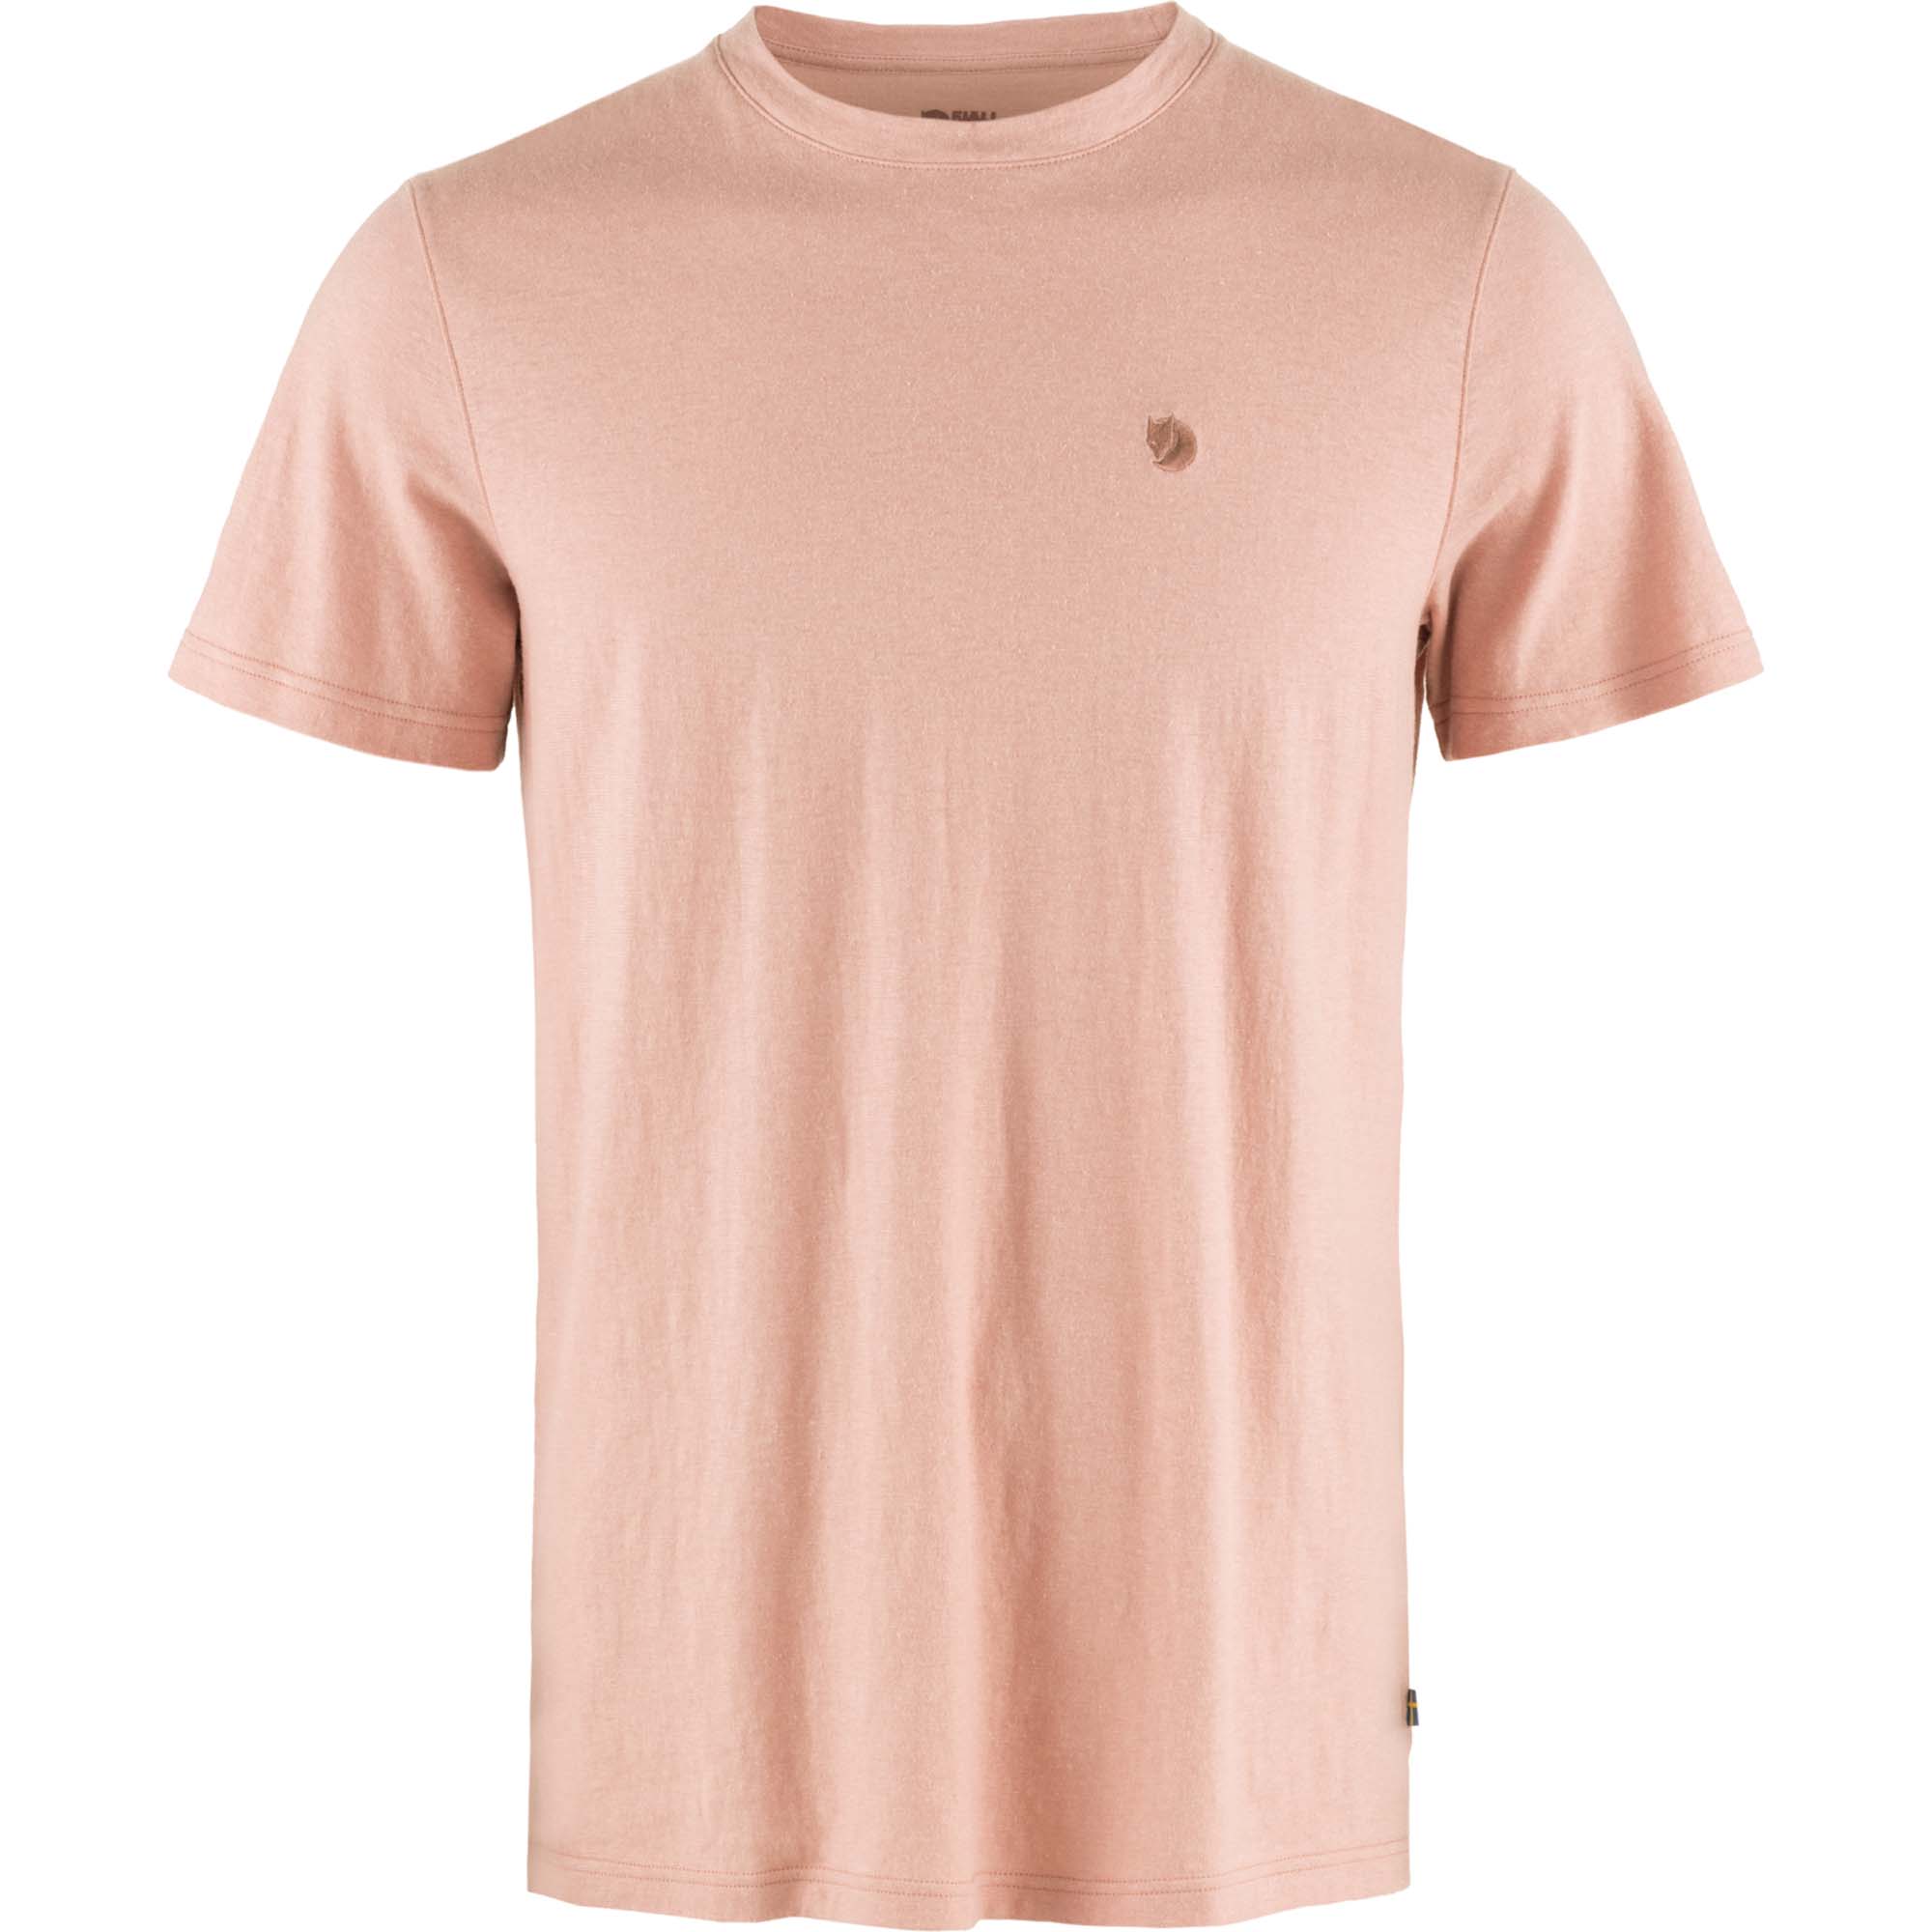 FJALLRAVEN hemp blend t-shirt